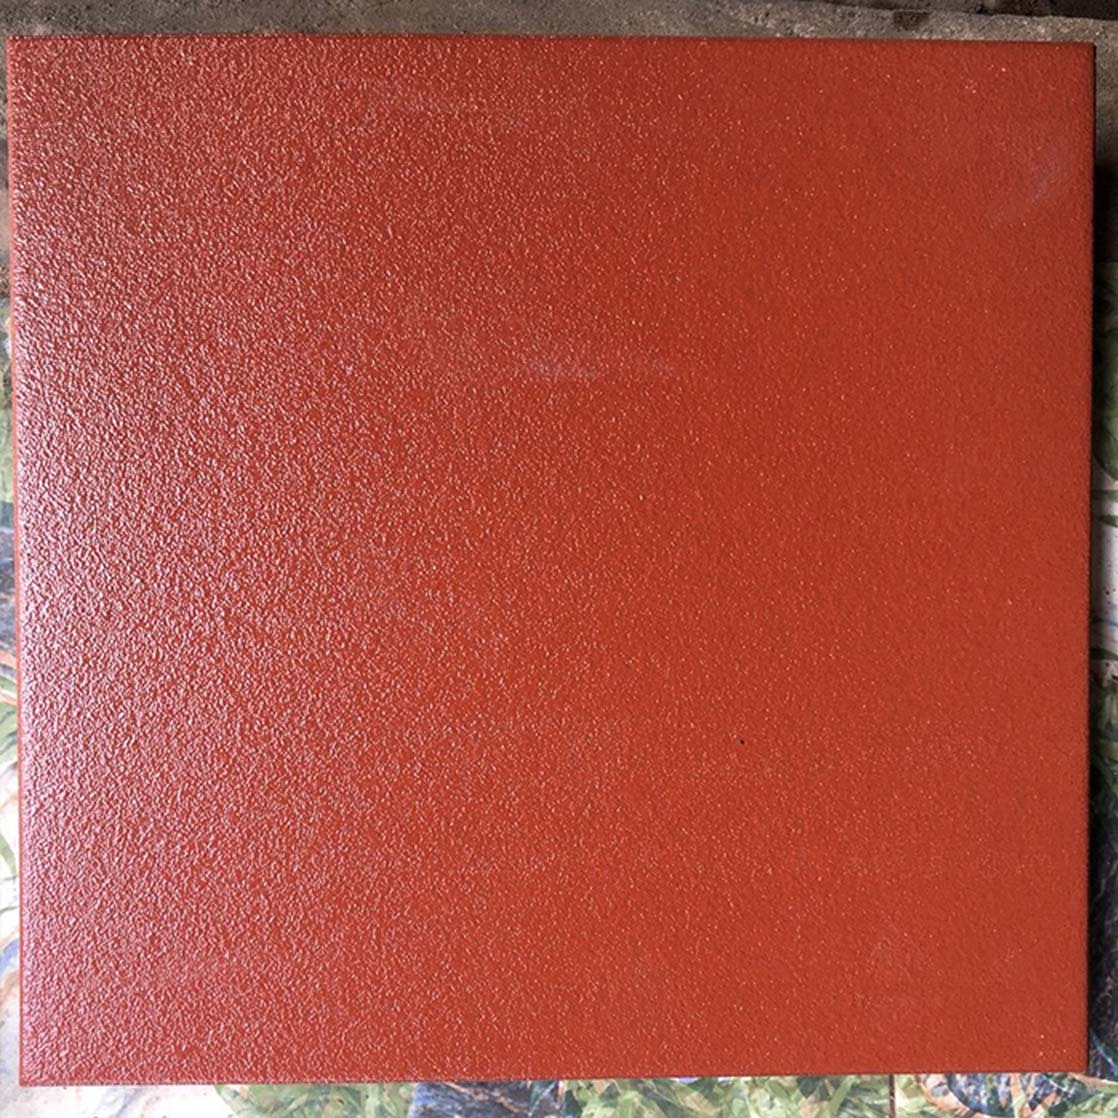 Gạch Cotto tráng men Viglacera Hạ Long 500x500 màu đỏ cao cấp